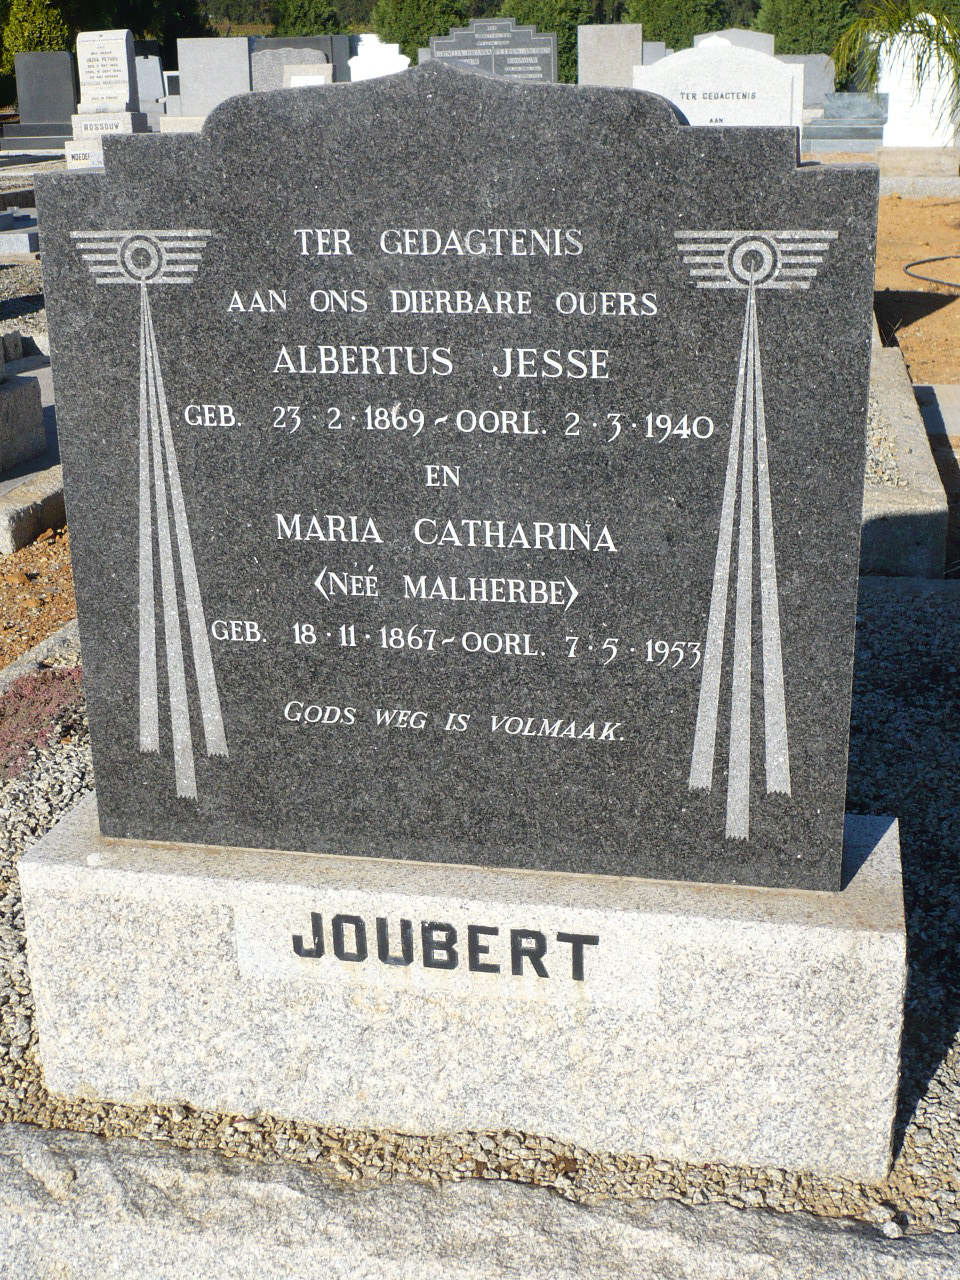 JOUBERT Albertus Jesse 1869-1940 & Maria Catharina MALHERBE 1867-1953